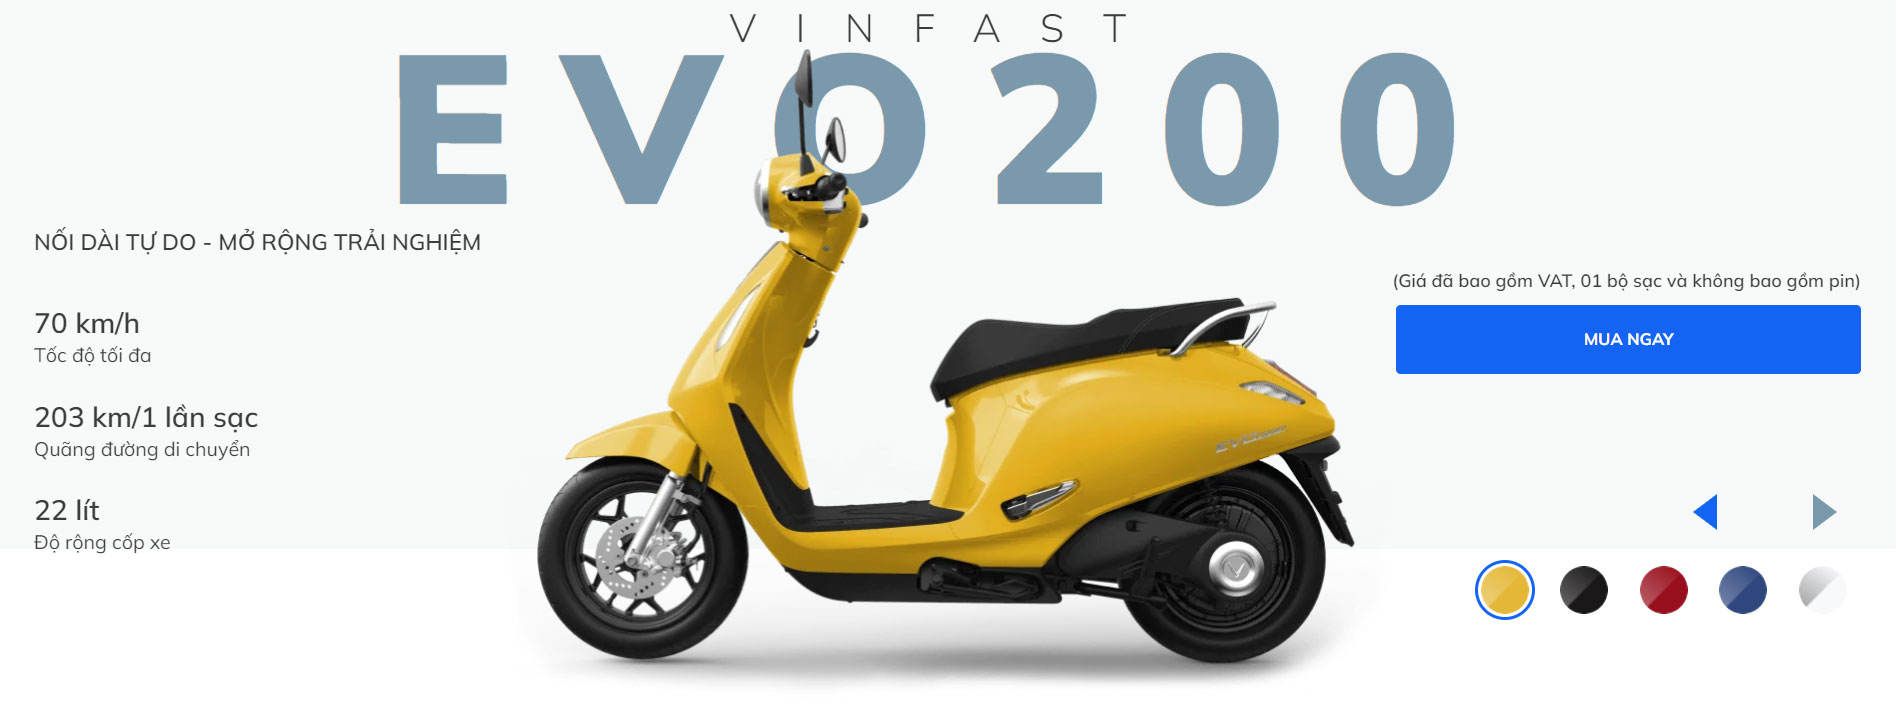 Xe máy điện VinFast Evo 200